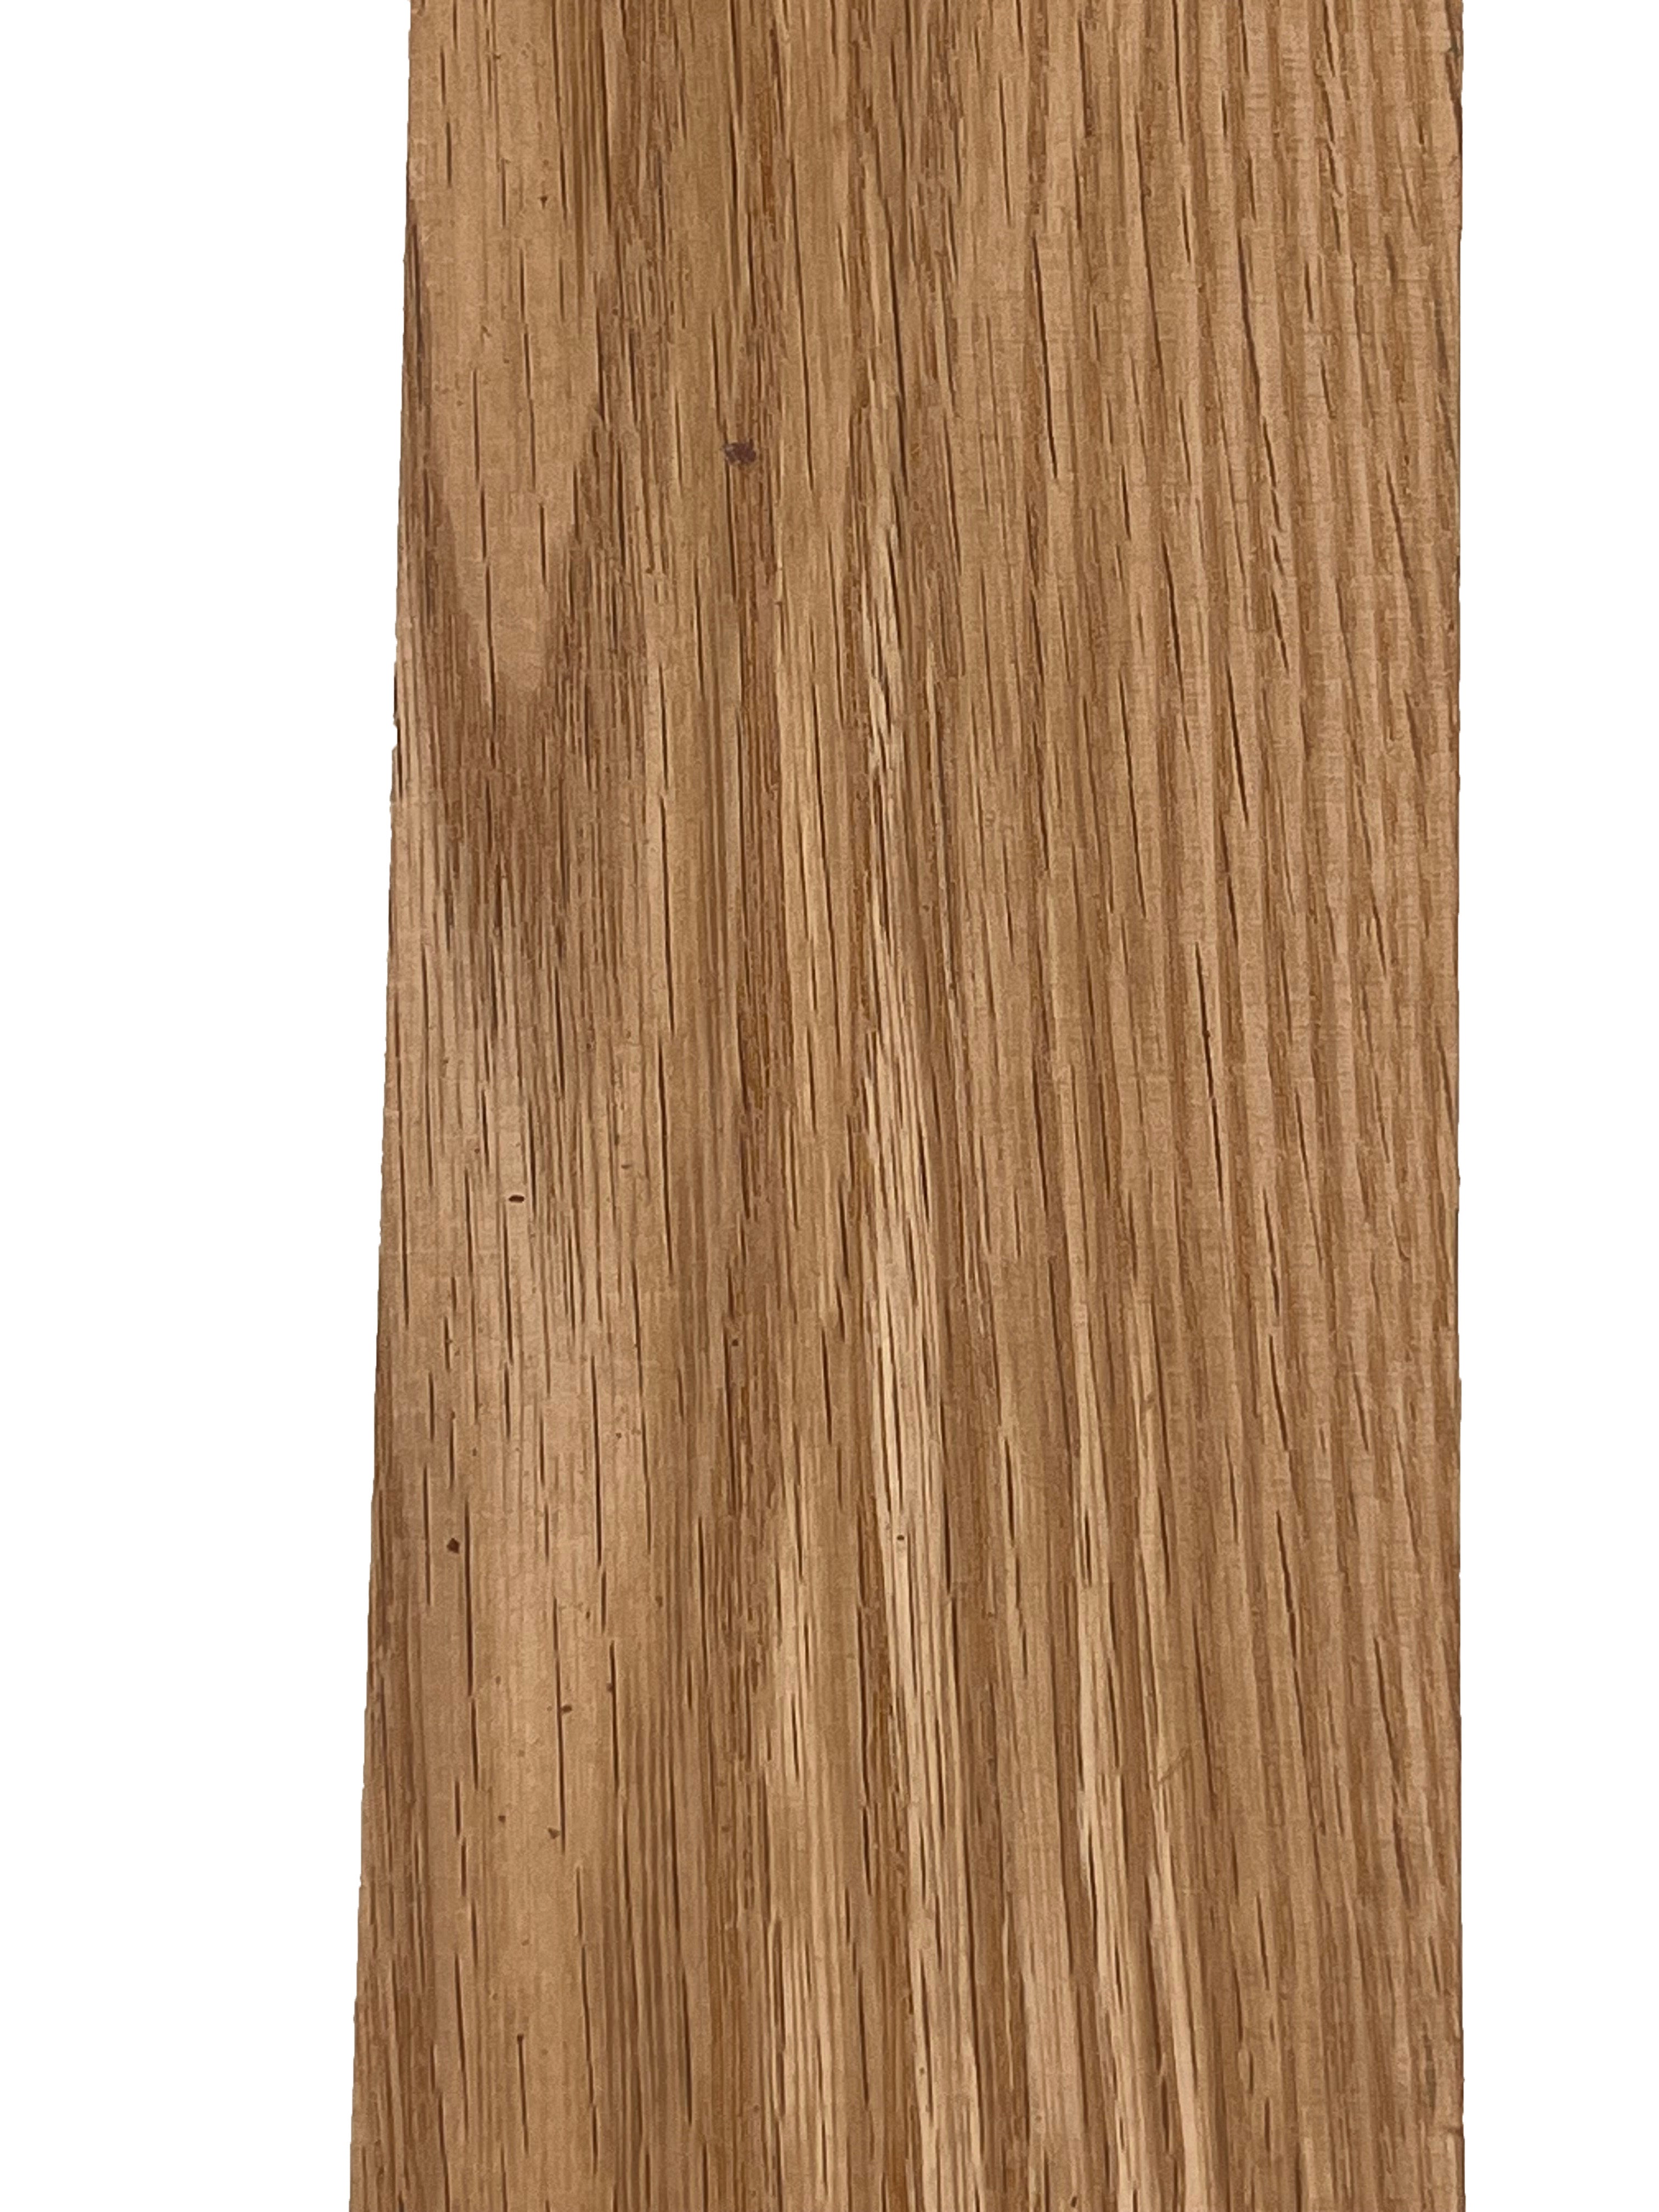 Tablero de madera de roble rojo - 3/4 x 2 (4 piezas) (3/4 x 2 x 12)